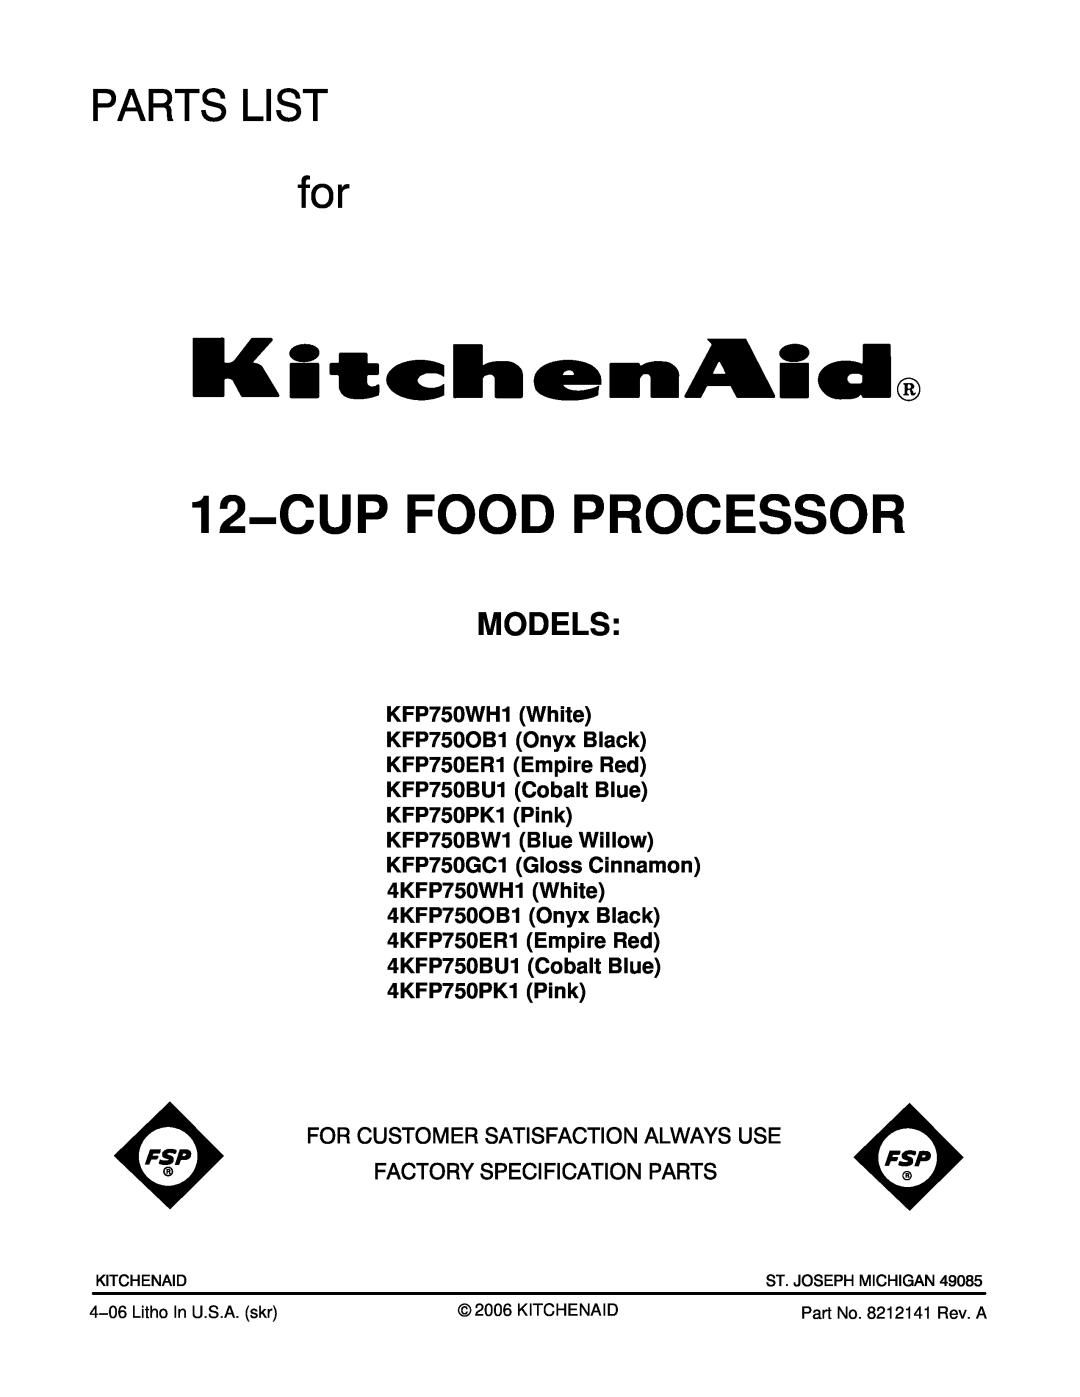 KitchenAid KFP750BW1, KFP750BU1, KFP750WH1, KFP750PK1 manual Models, 12−CUP FOOD PROCESSOR, Part No. 8212141 Rev. A 